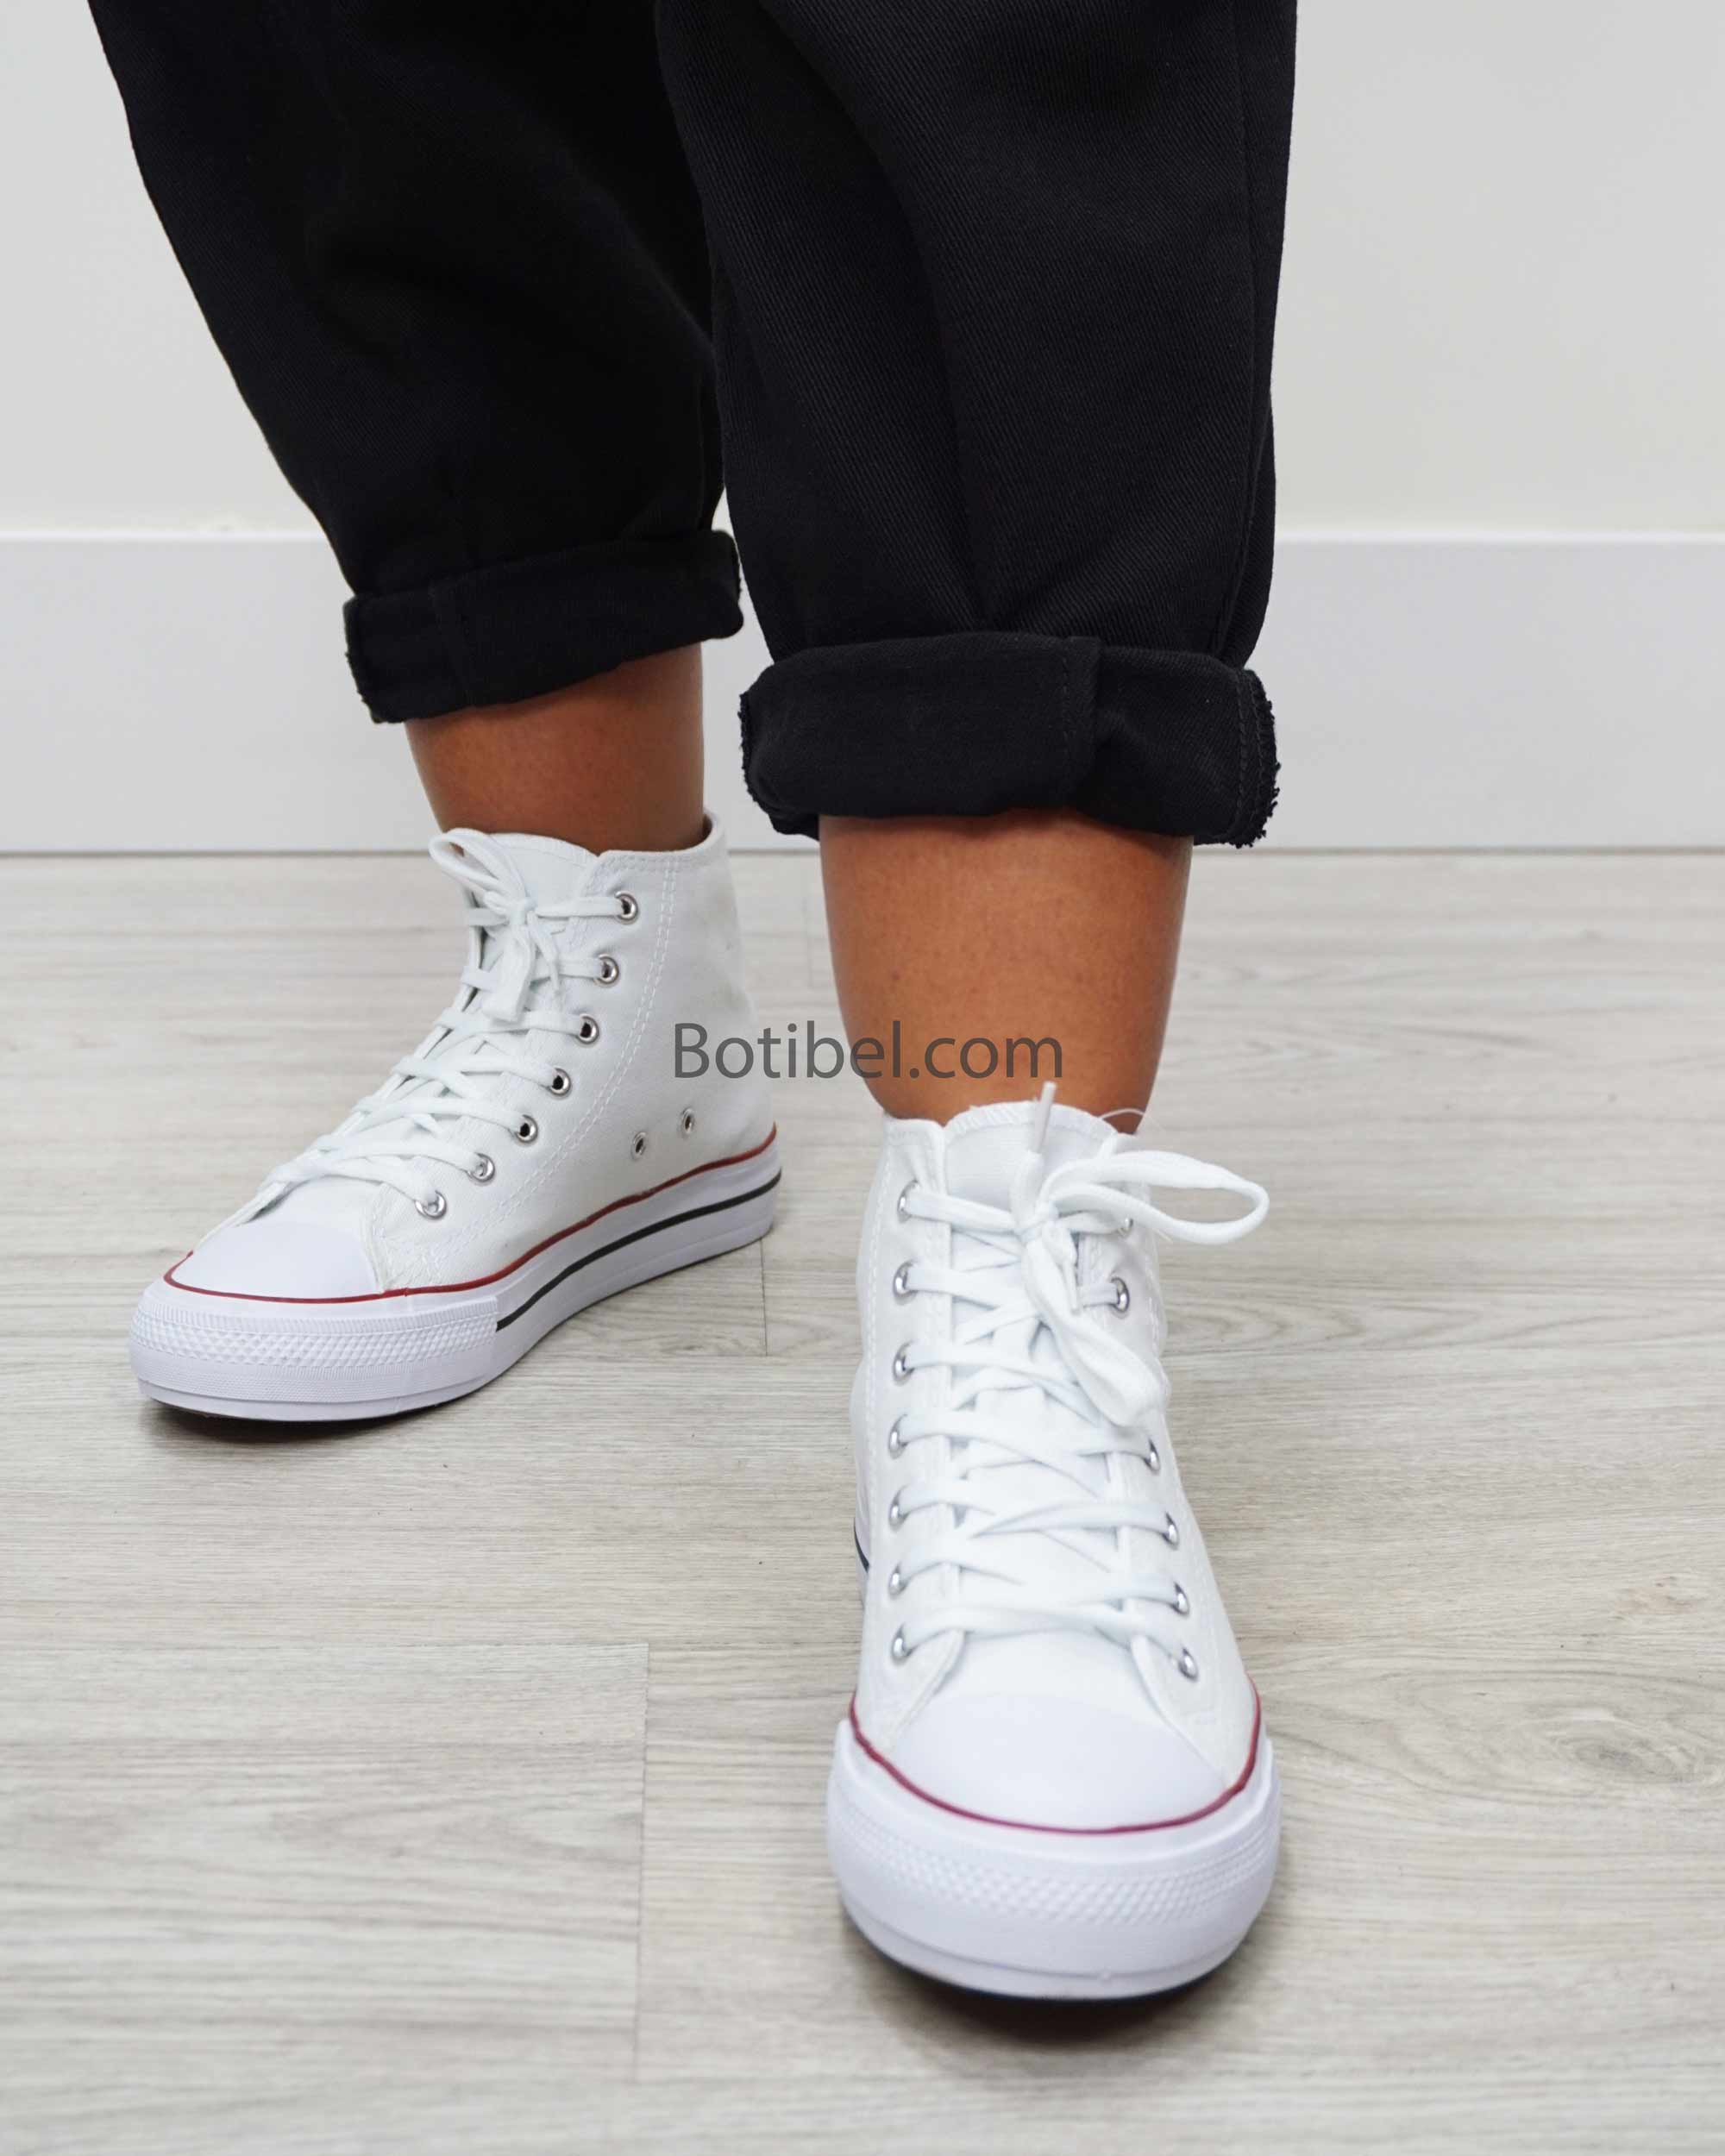 Zapatillas blancas doble suela - Botibel.com